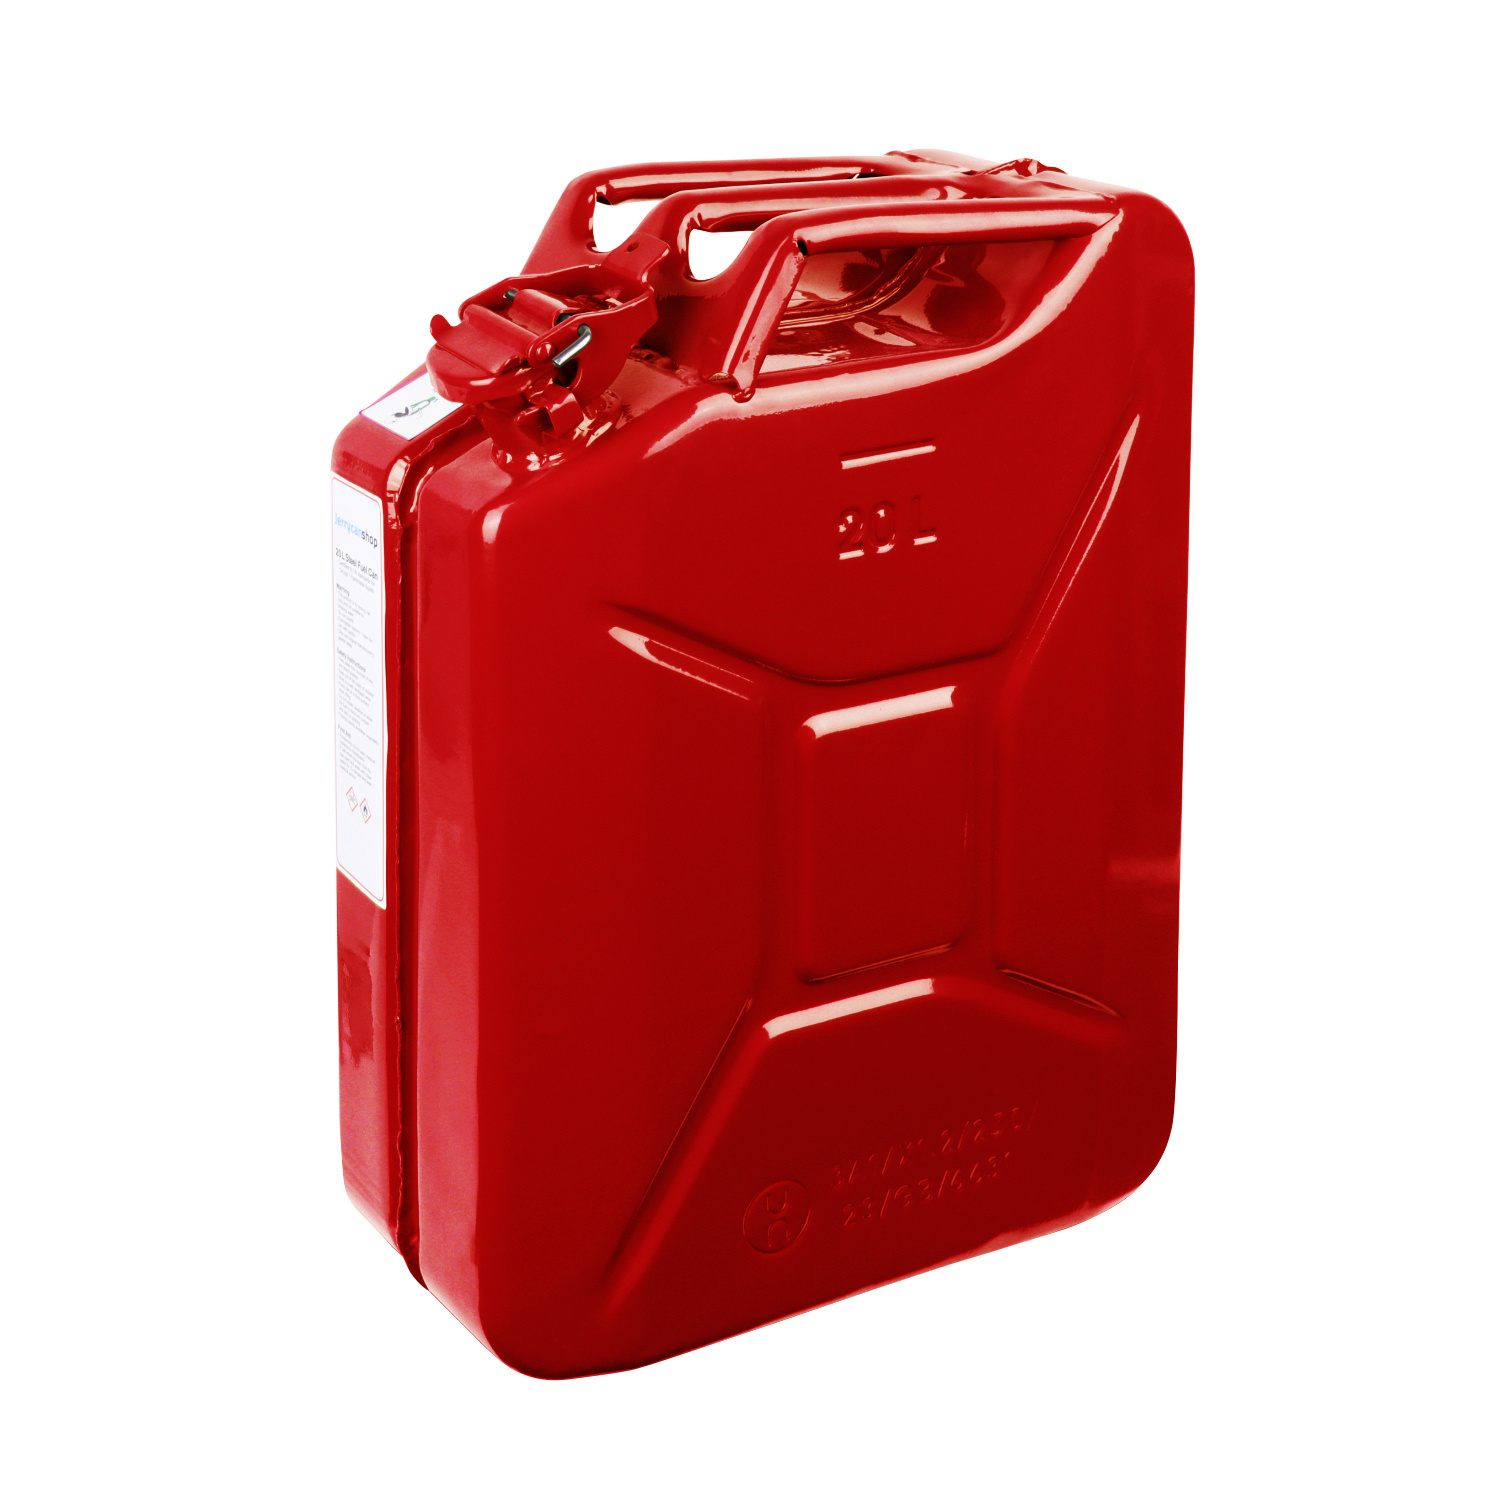 5 Liter Metall Kanister für Benzin & Diesel - Rot 